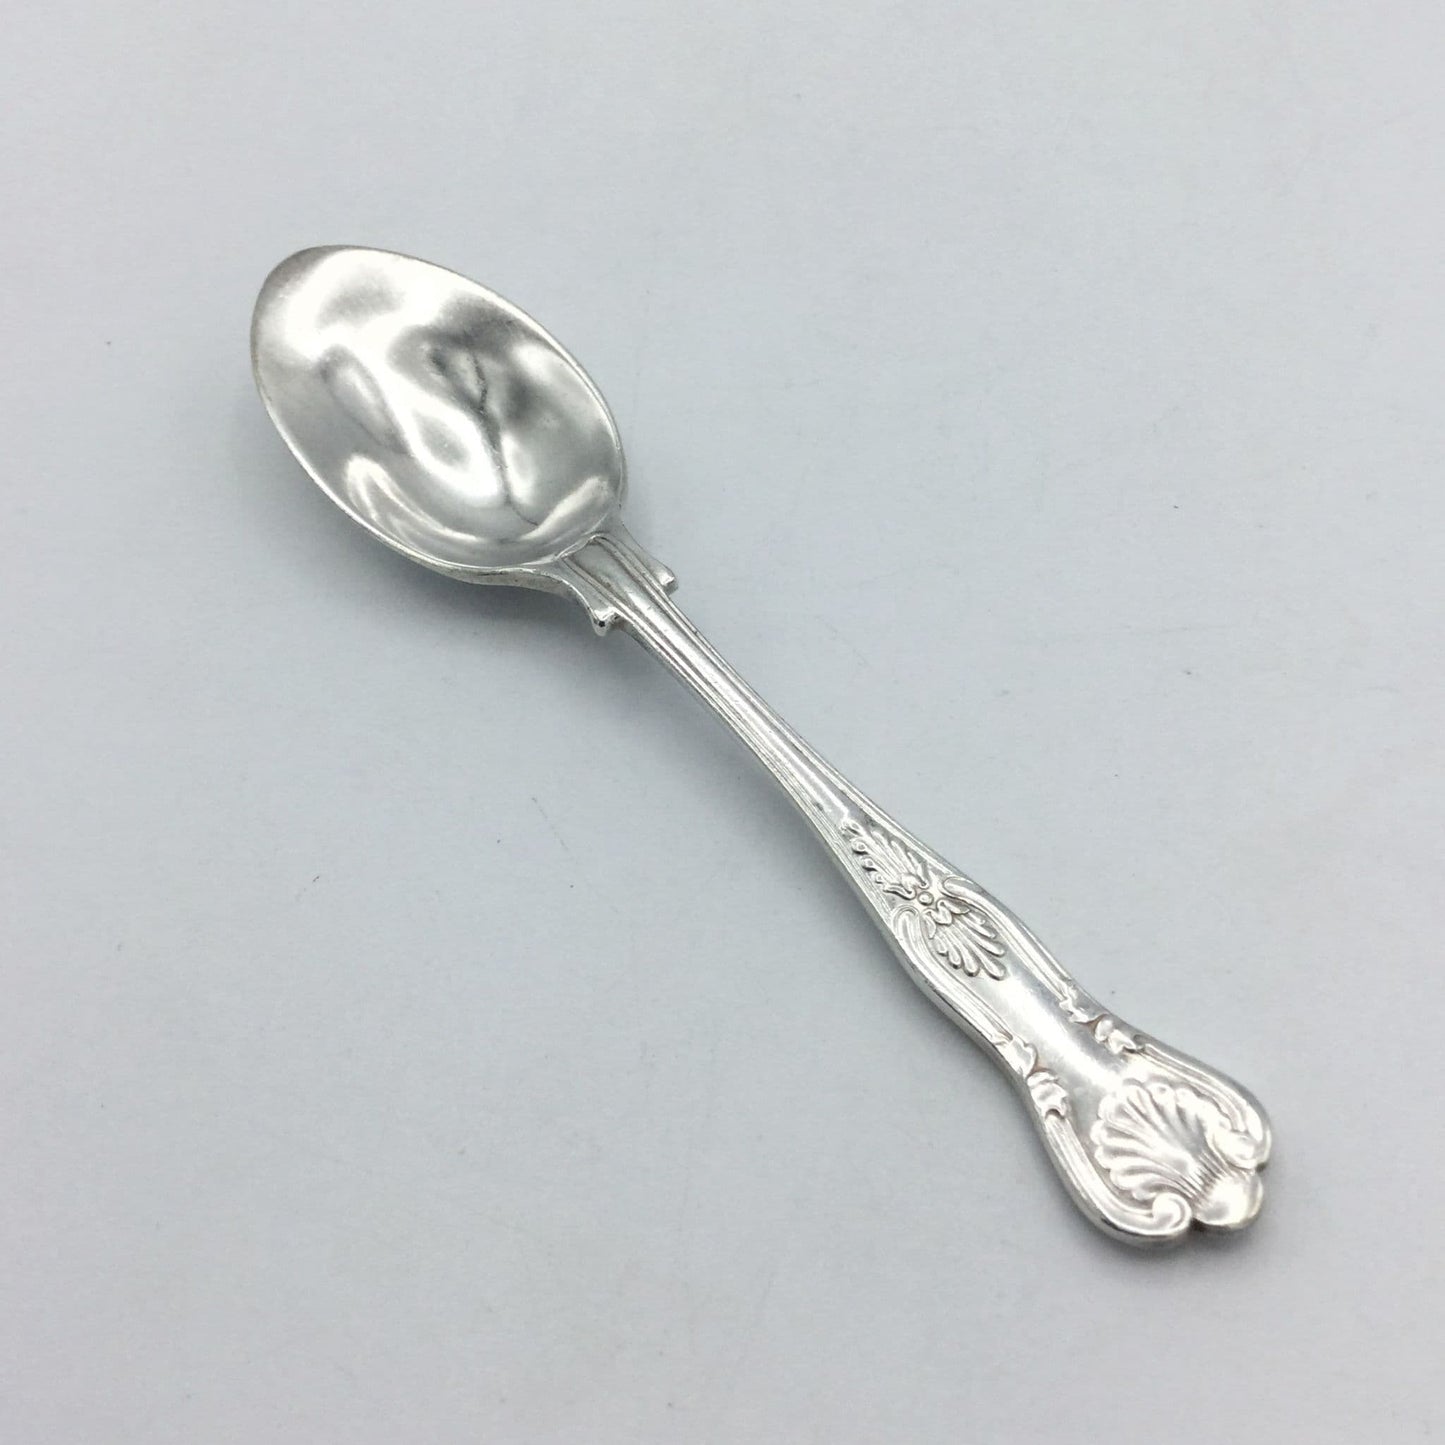 Vintage 1950s Silver Plated Tea Spoon, Medicine Spoon